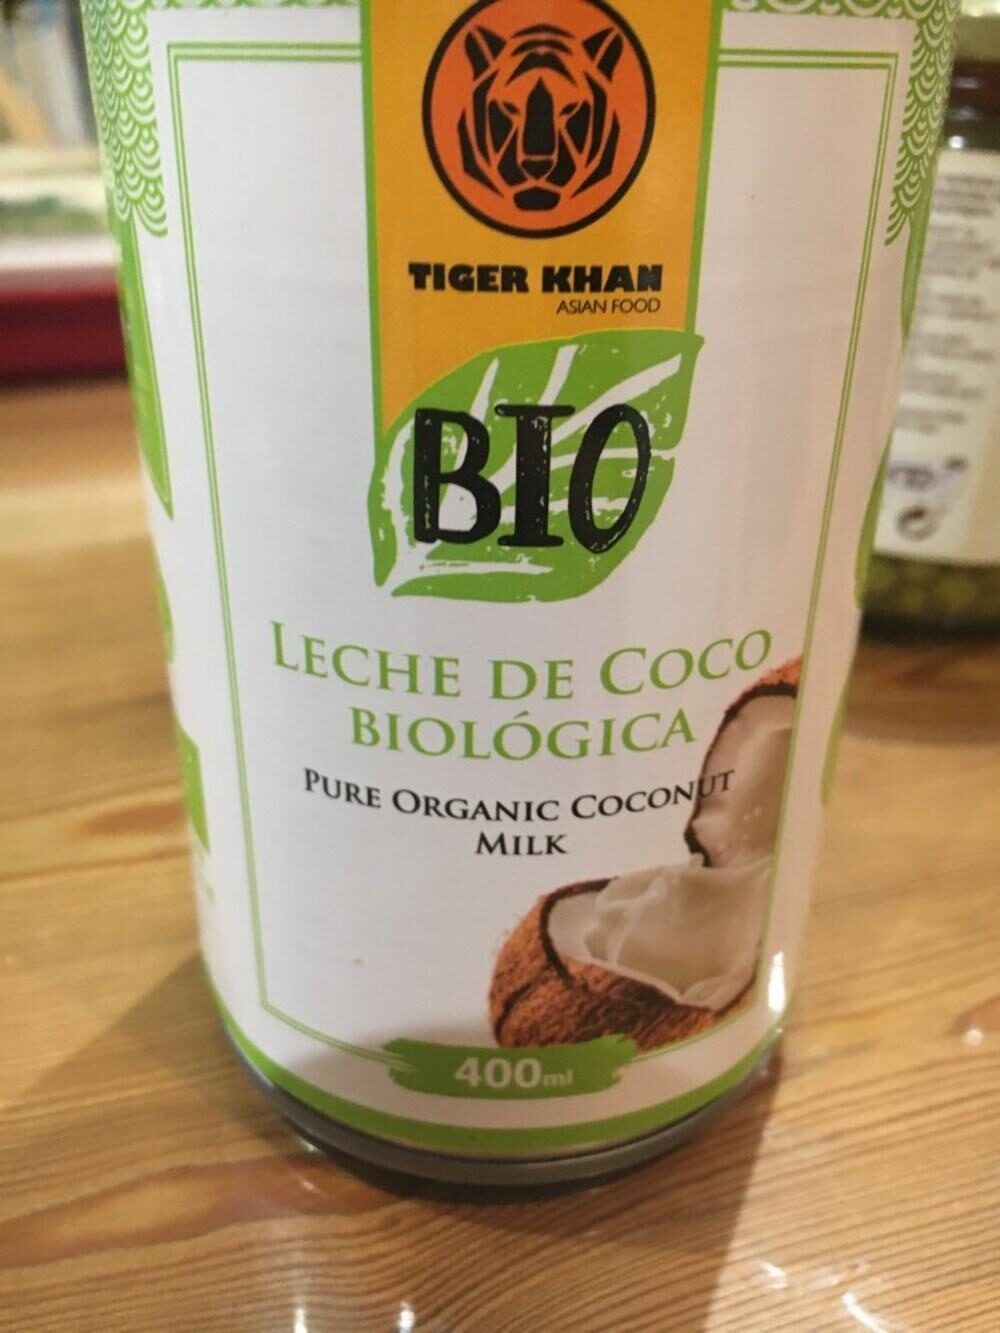 Leche coco biologoca - Product - es